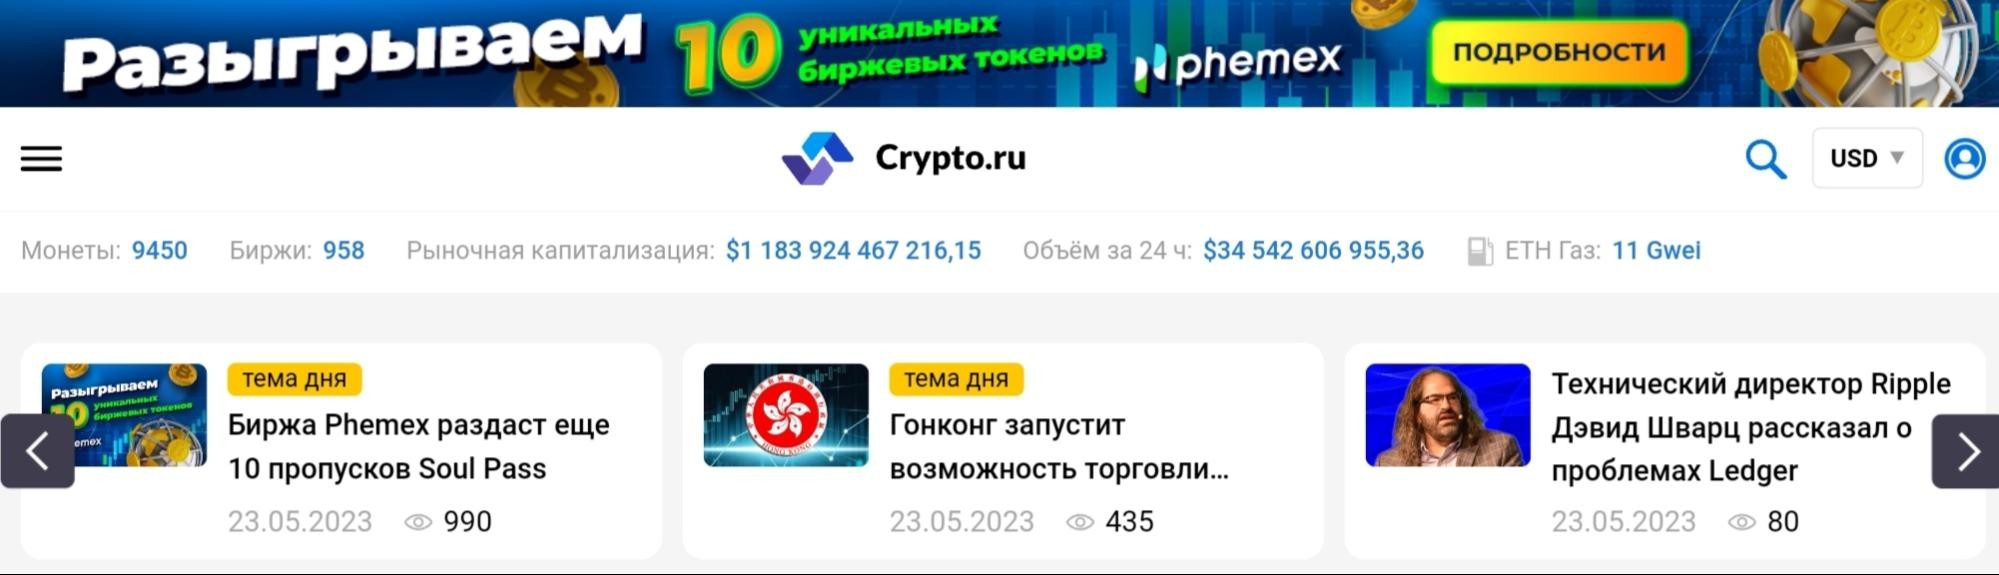 crypto ru официальный сайт